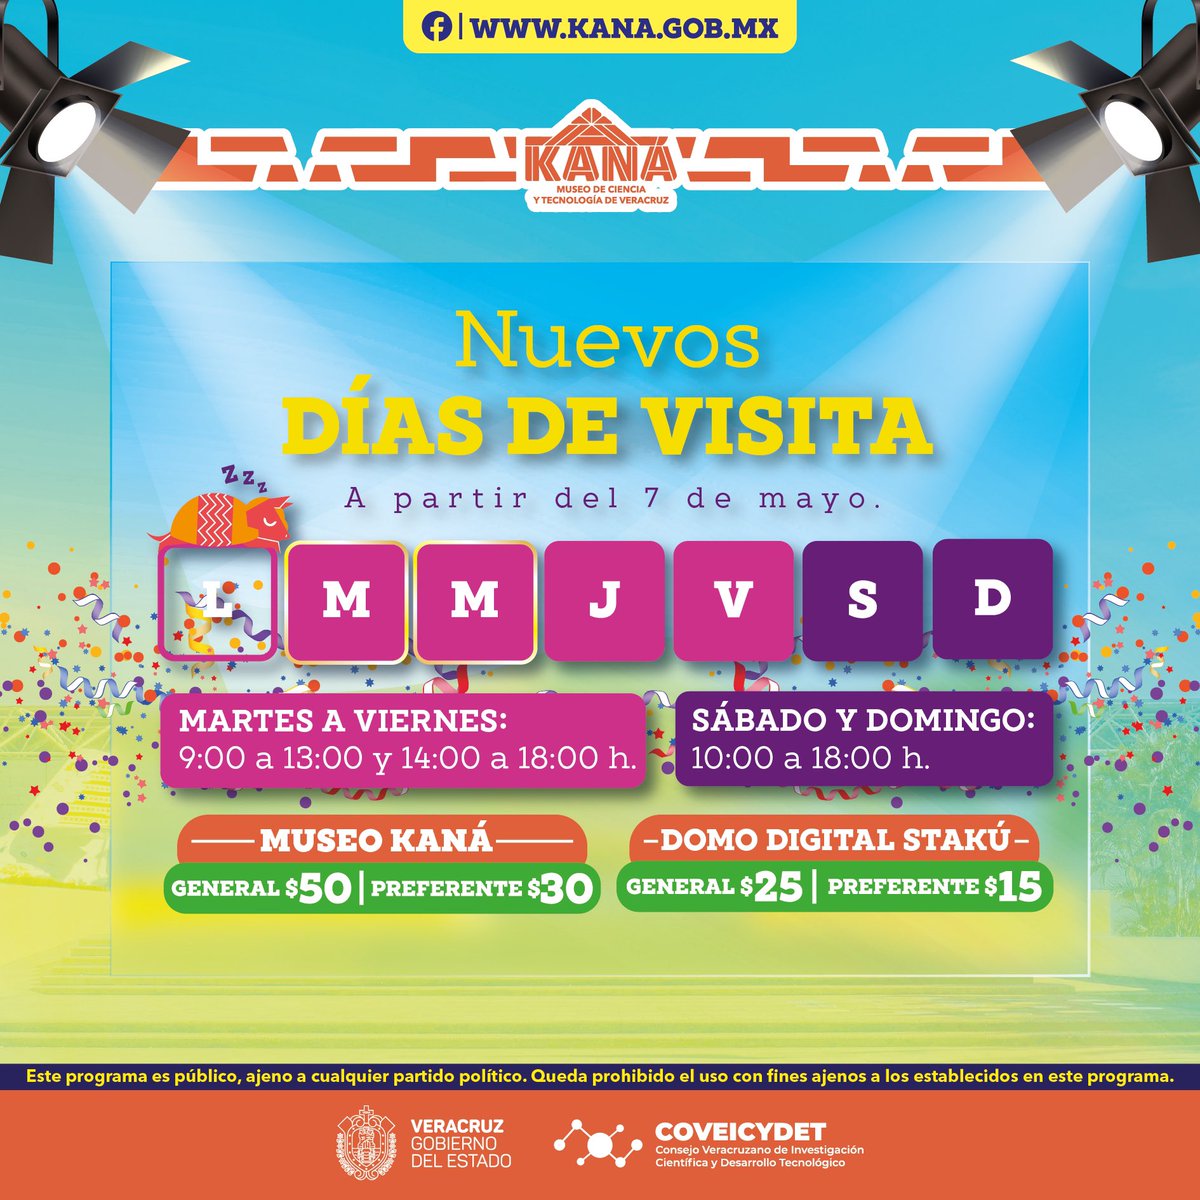 ¡Nuevos días de visita!🤩 📆 Aprovecha la oportunidad de visitar y descubrir el Museo Kaná en Xalapa, porque partir del 7 de mayo abrirá sus puertas de martes a domingo. Conoce los horarios aquí. ⤵️